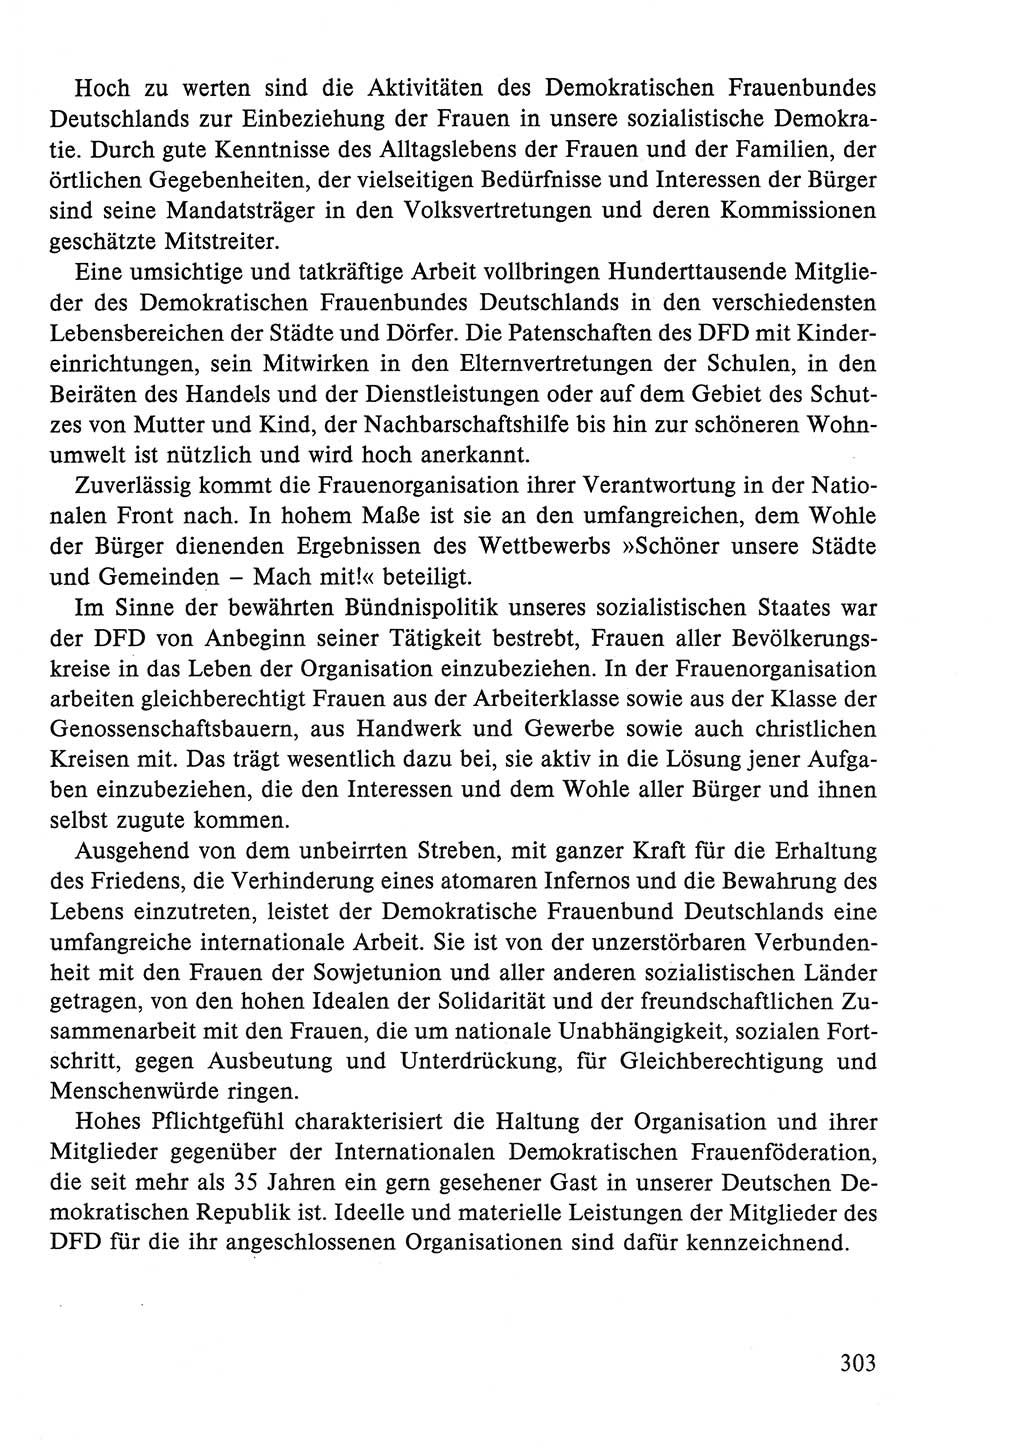 Dokumente der Sozialistischen Einheitspartei Deutschlands (SED) [Deutsche Demokratische Republik (DDR)] 1986-1987, Seite 303 (Dok. SED DDR 1986-1987, S. 303)